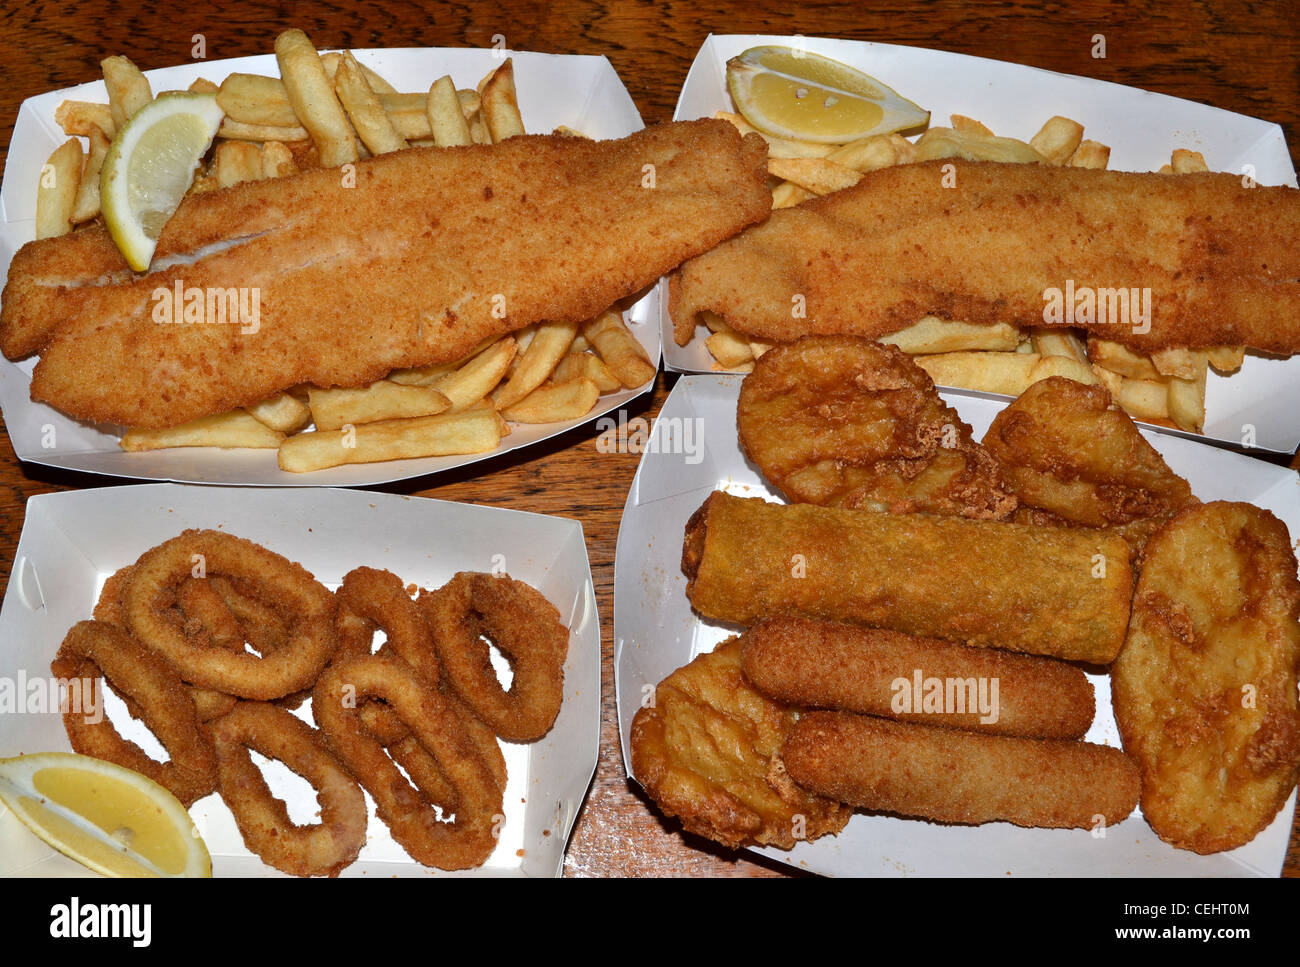 fish and chips, calamari, Chiko Roll, potato scallop, lemon fried seafood  Stock Photo - Alamy